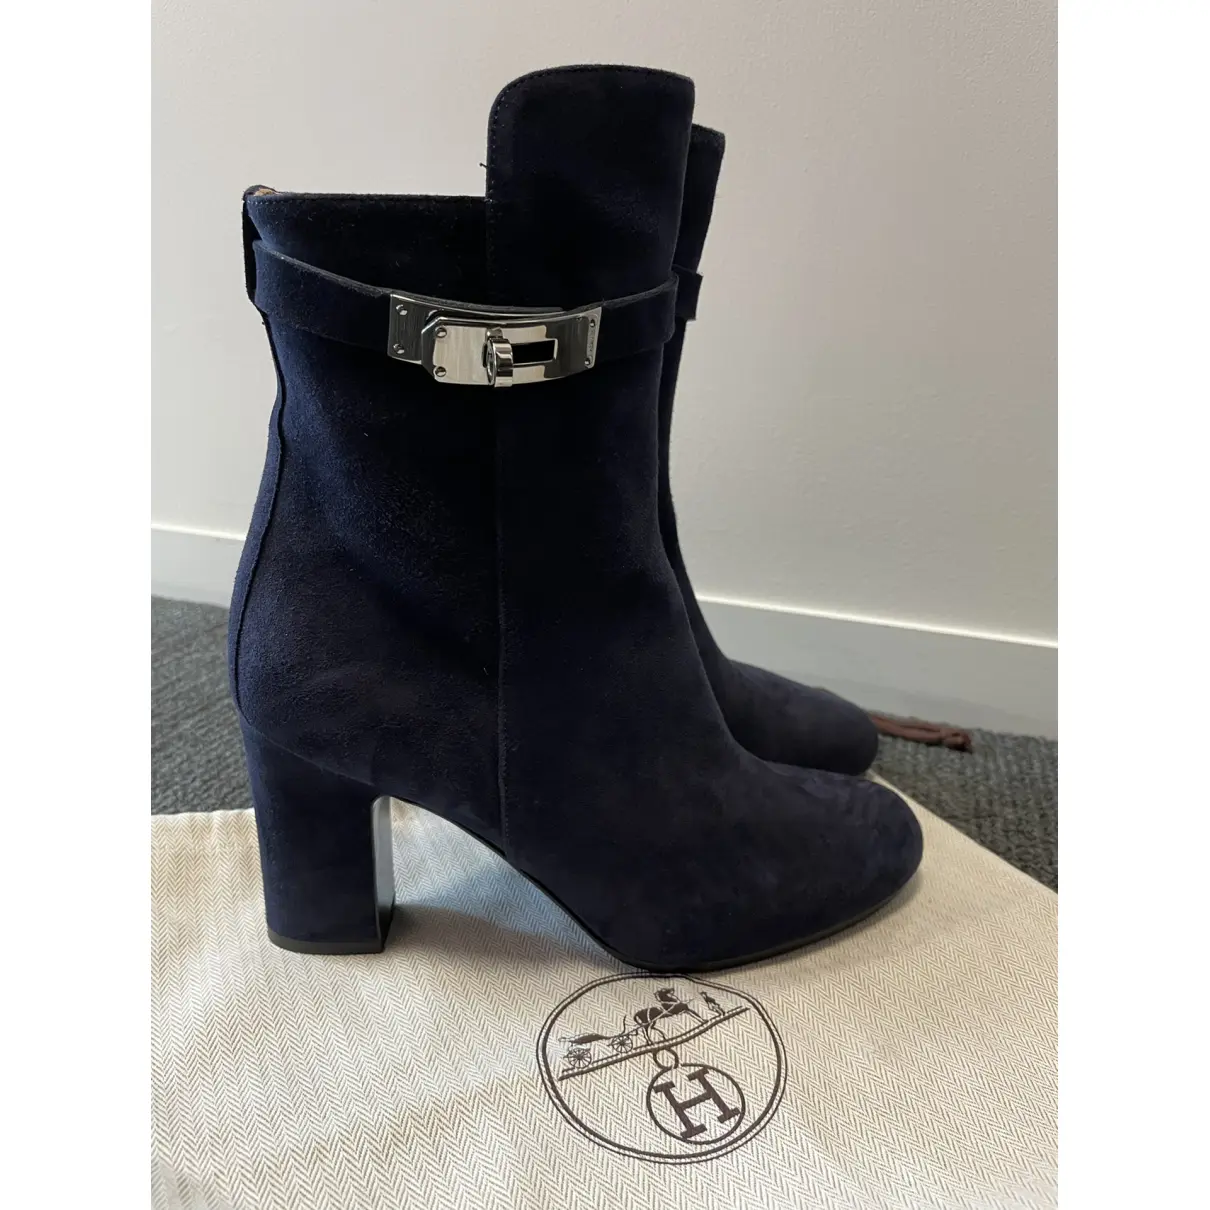 Buy Hermès Saint Germain buckled boots online